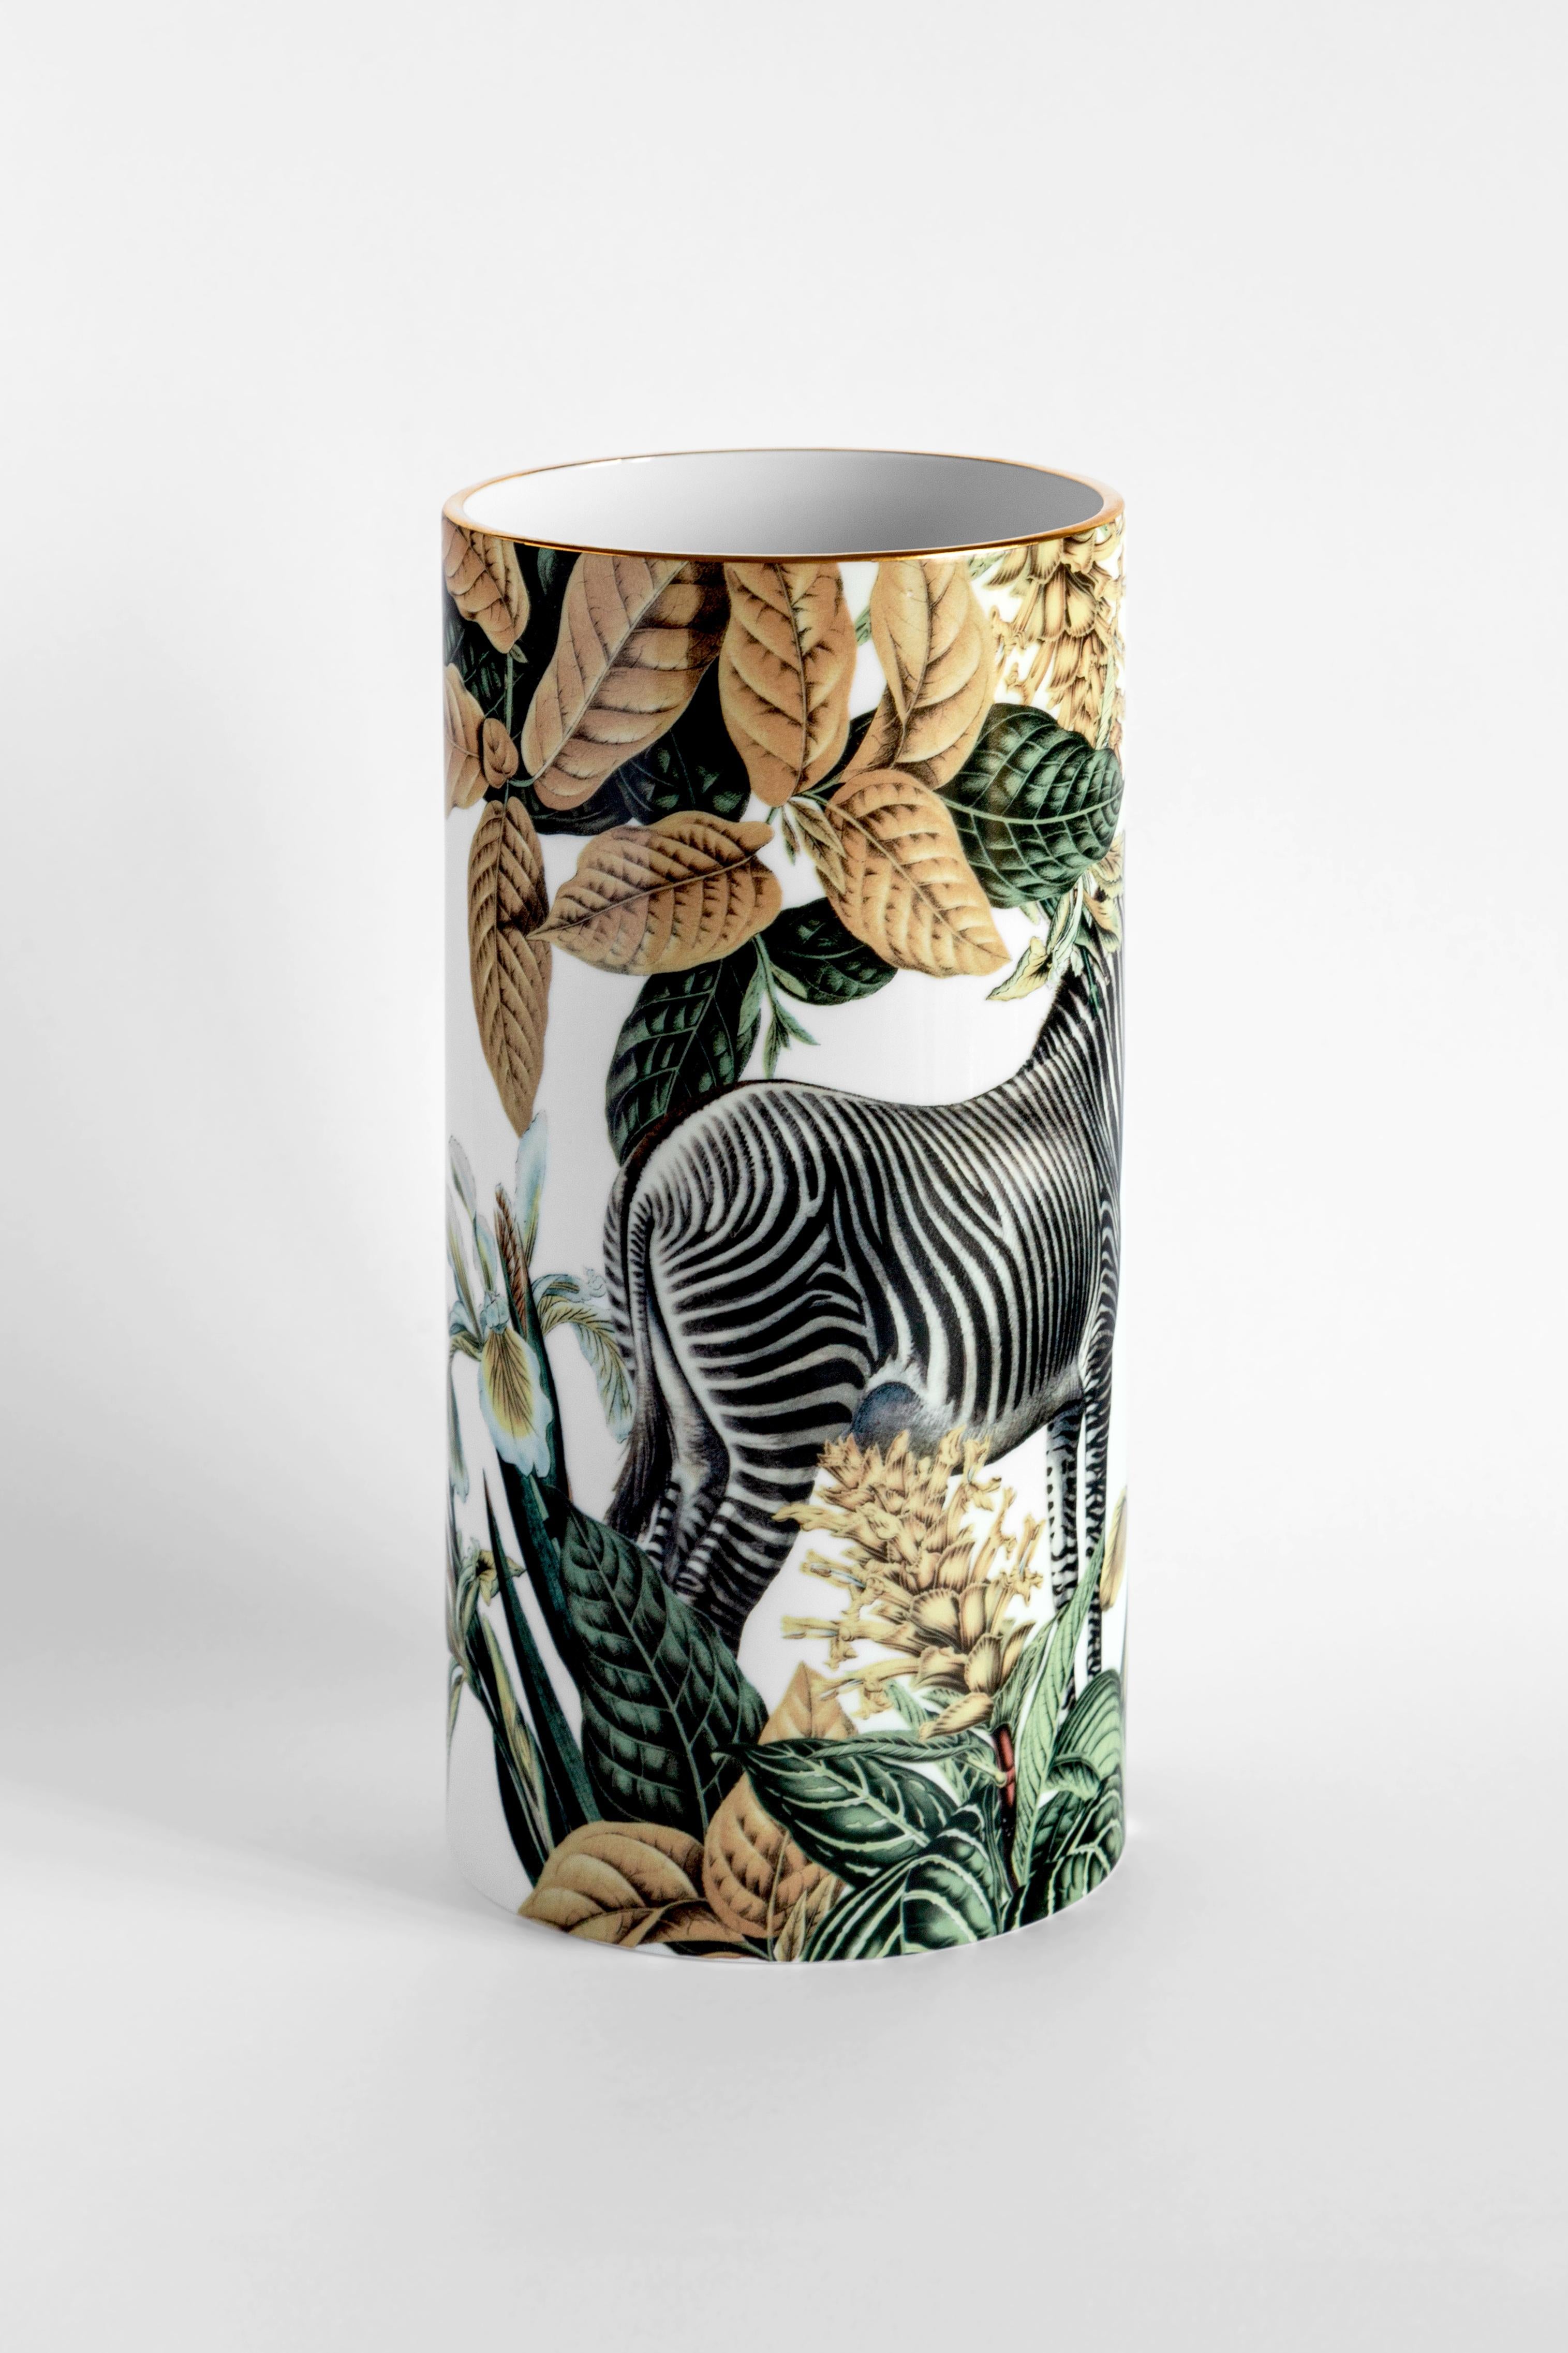 Des teintes étonnantes et des couleurs vibrantes dansent et s'assemblent de manière dynamique dans ce vase de Vito Nesta représentant un zèbre africain superbement détaillé entouré d'une végétation luxuriante de couleur or, verte et blanche. La